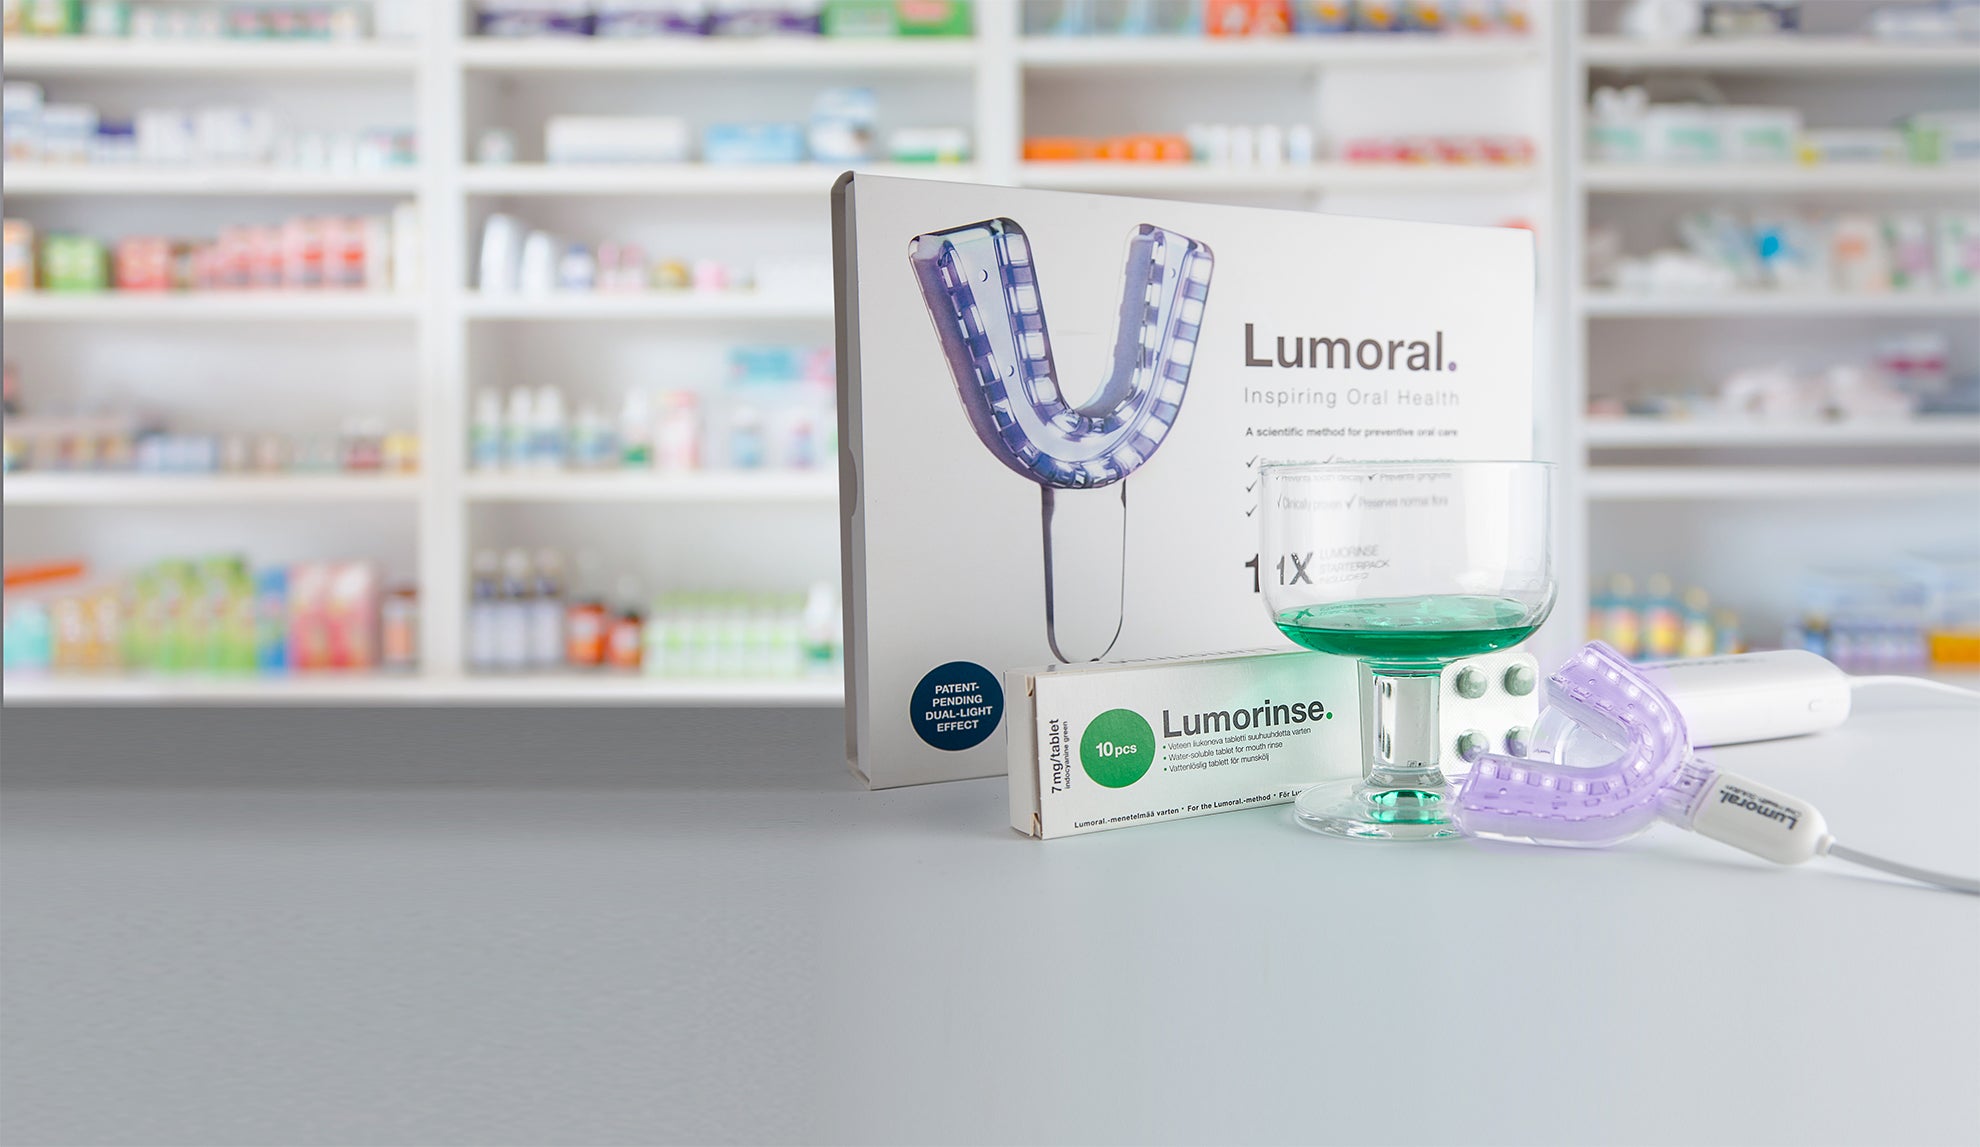 Lumoral innovation nu tillgänglig genom en välkänd apotekskedja i Sverige